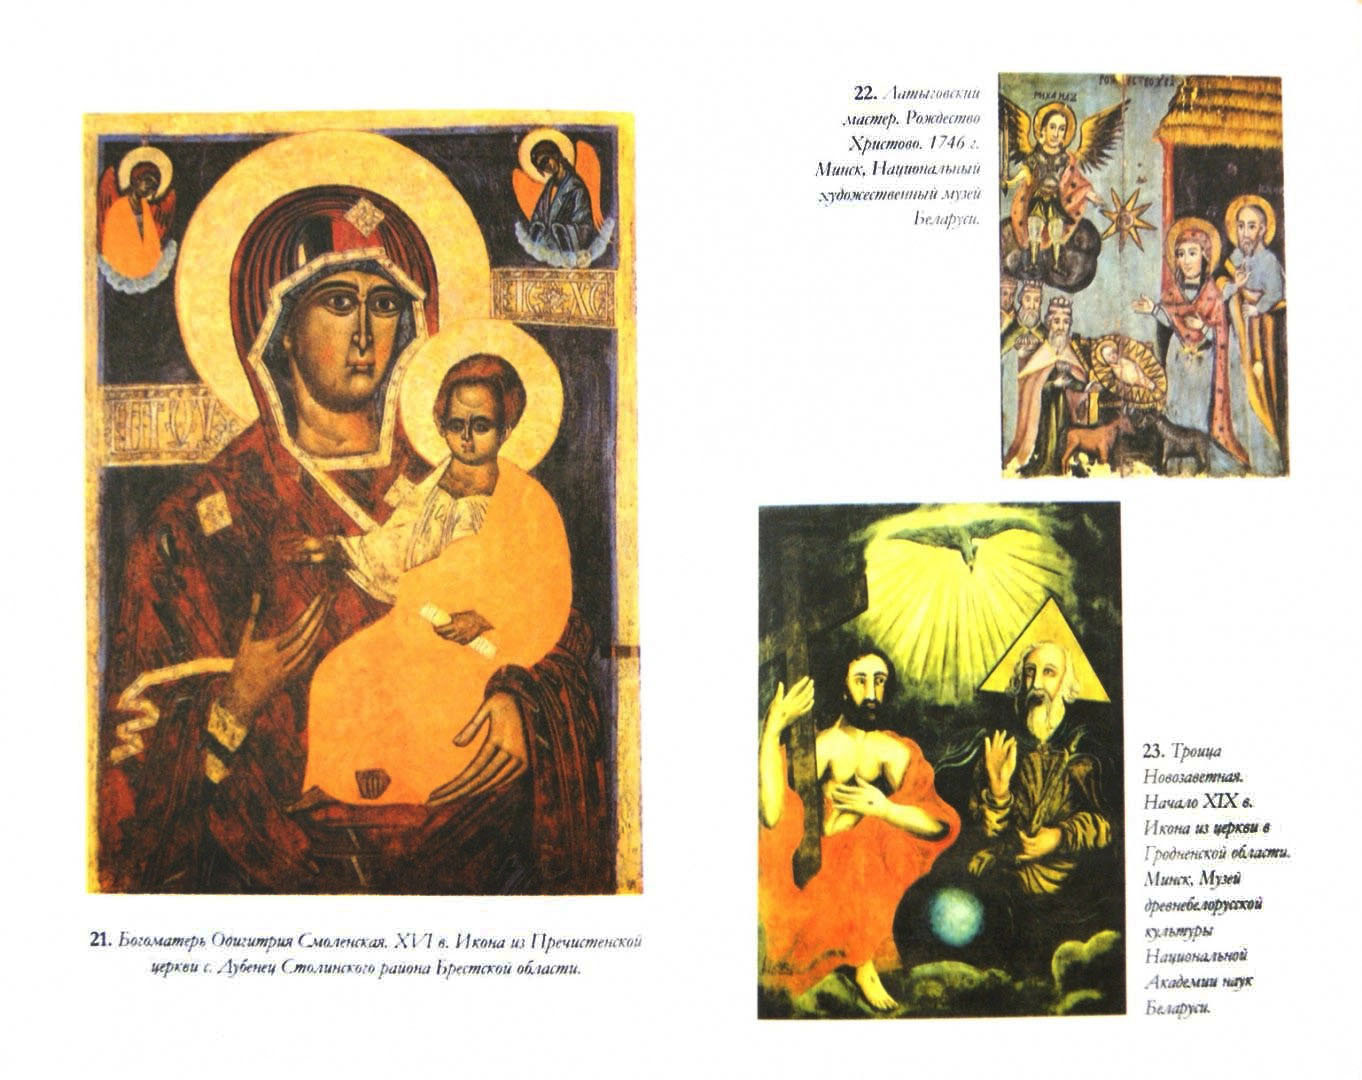 Обретение образа. Православная белорусская культура в славянском мире